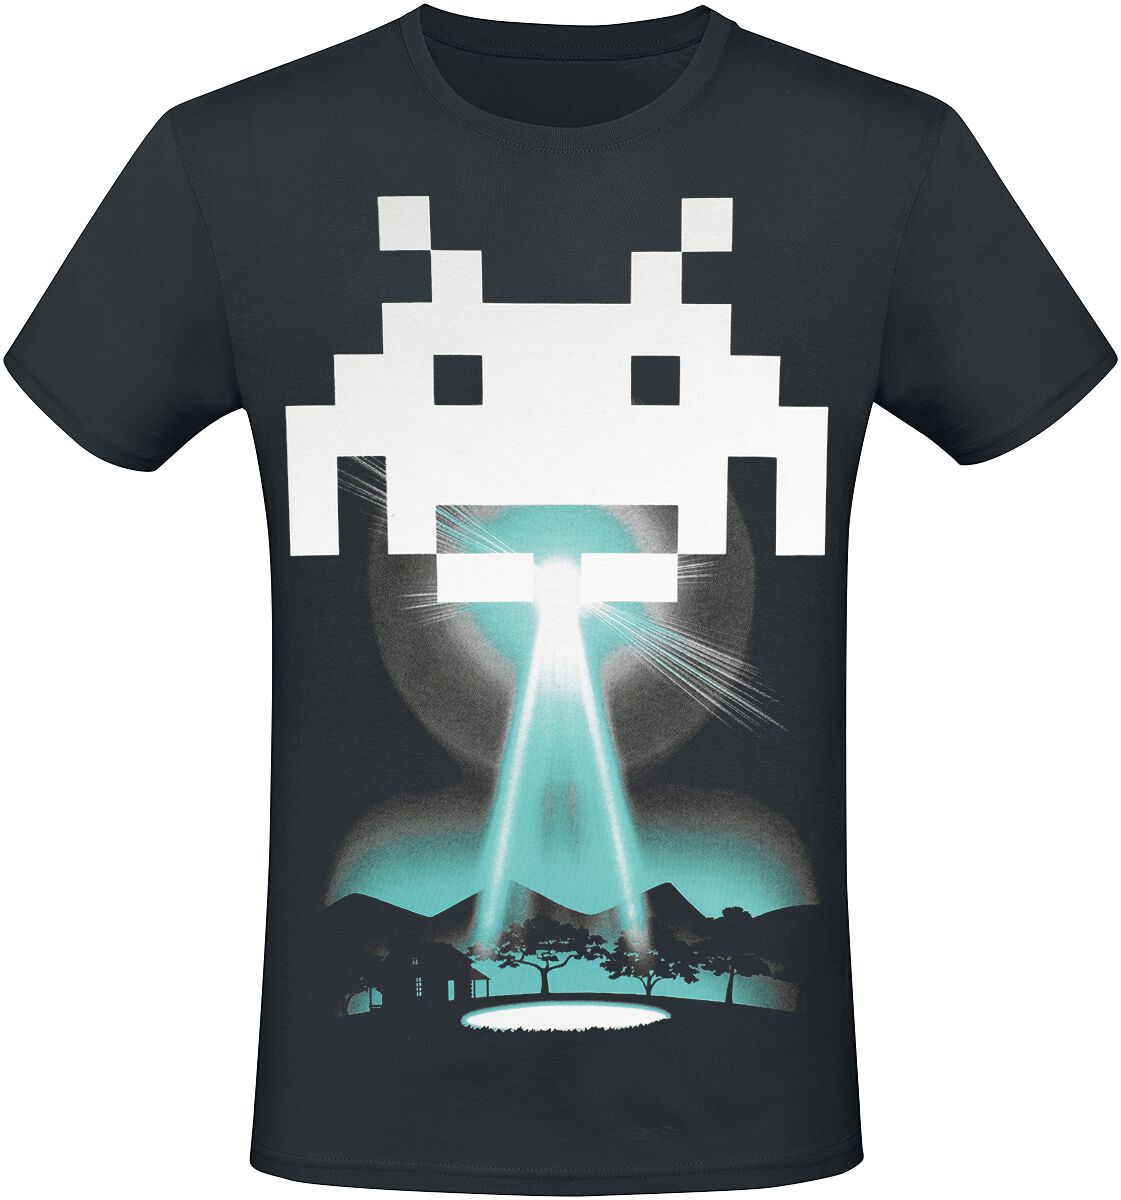 Space Invaders - Gaming T-Shirt - Beam Me Up Alien - XS bis 3XL - für Männer - Größe XS - schwarz  - EMP exklusives Merchandise!